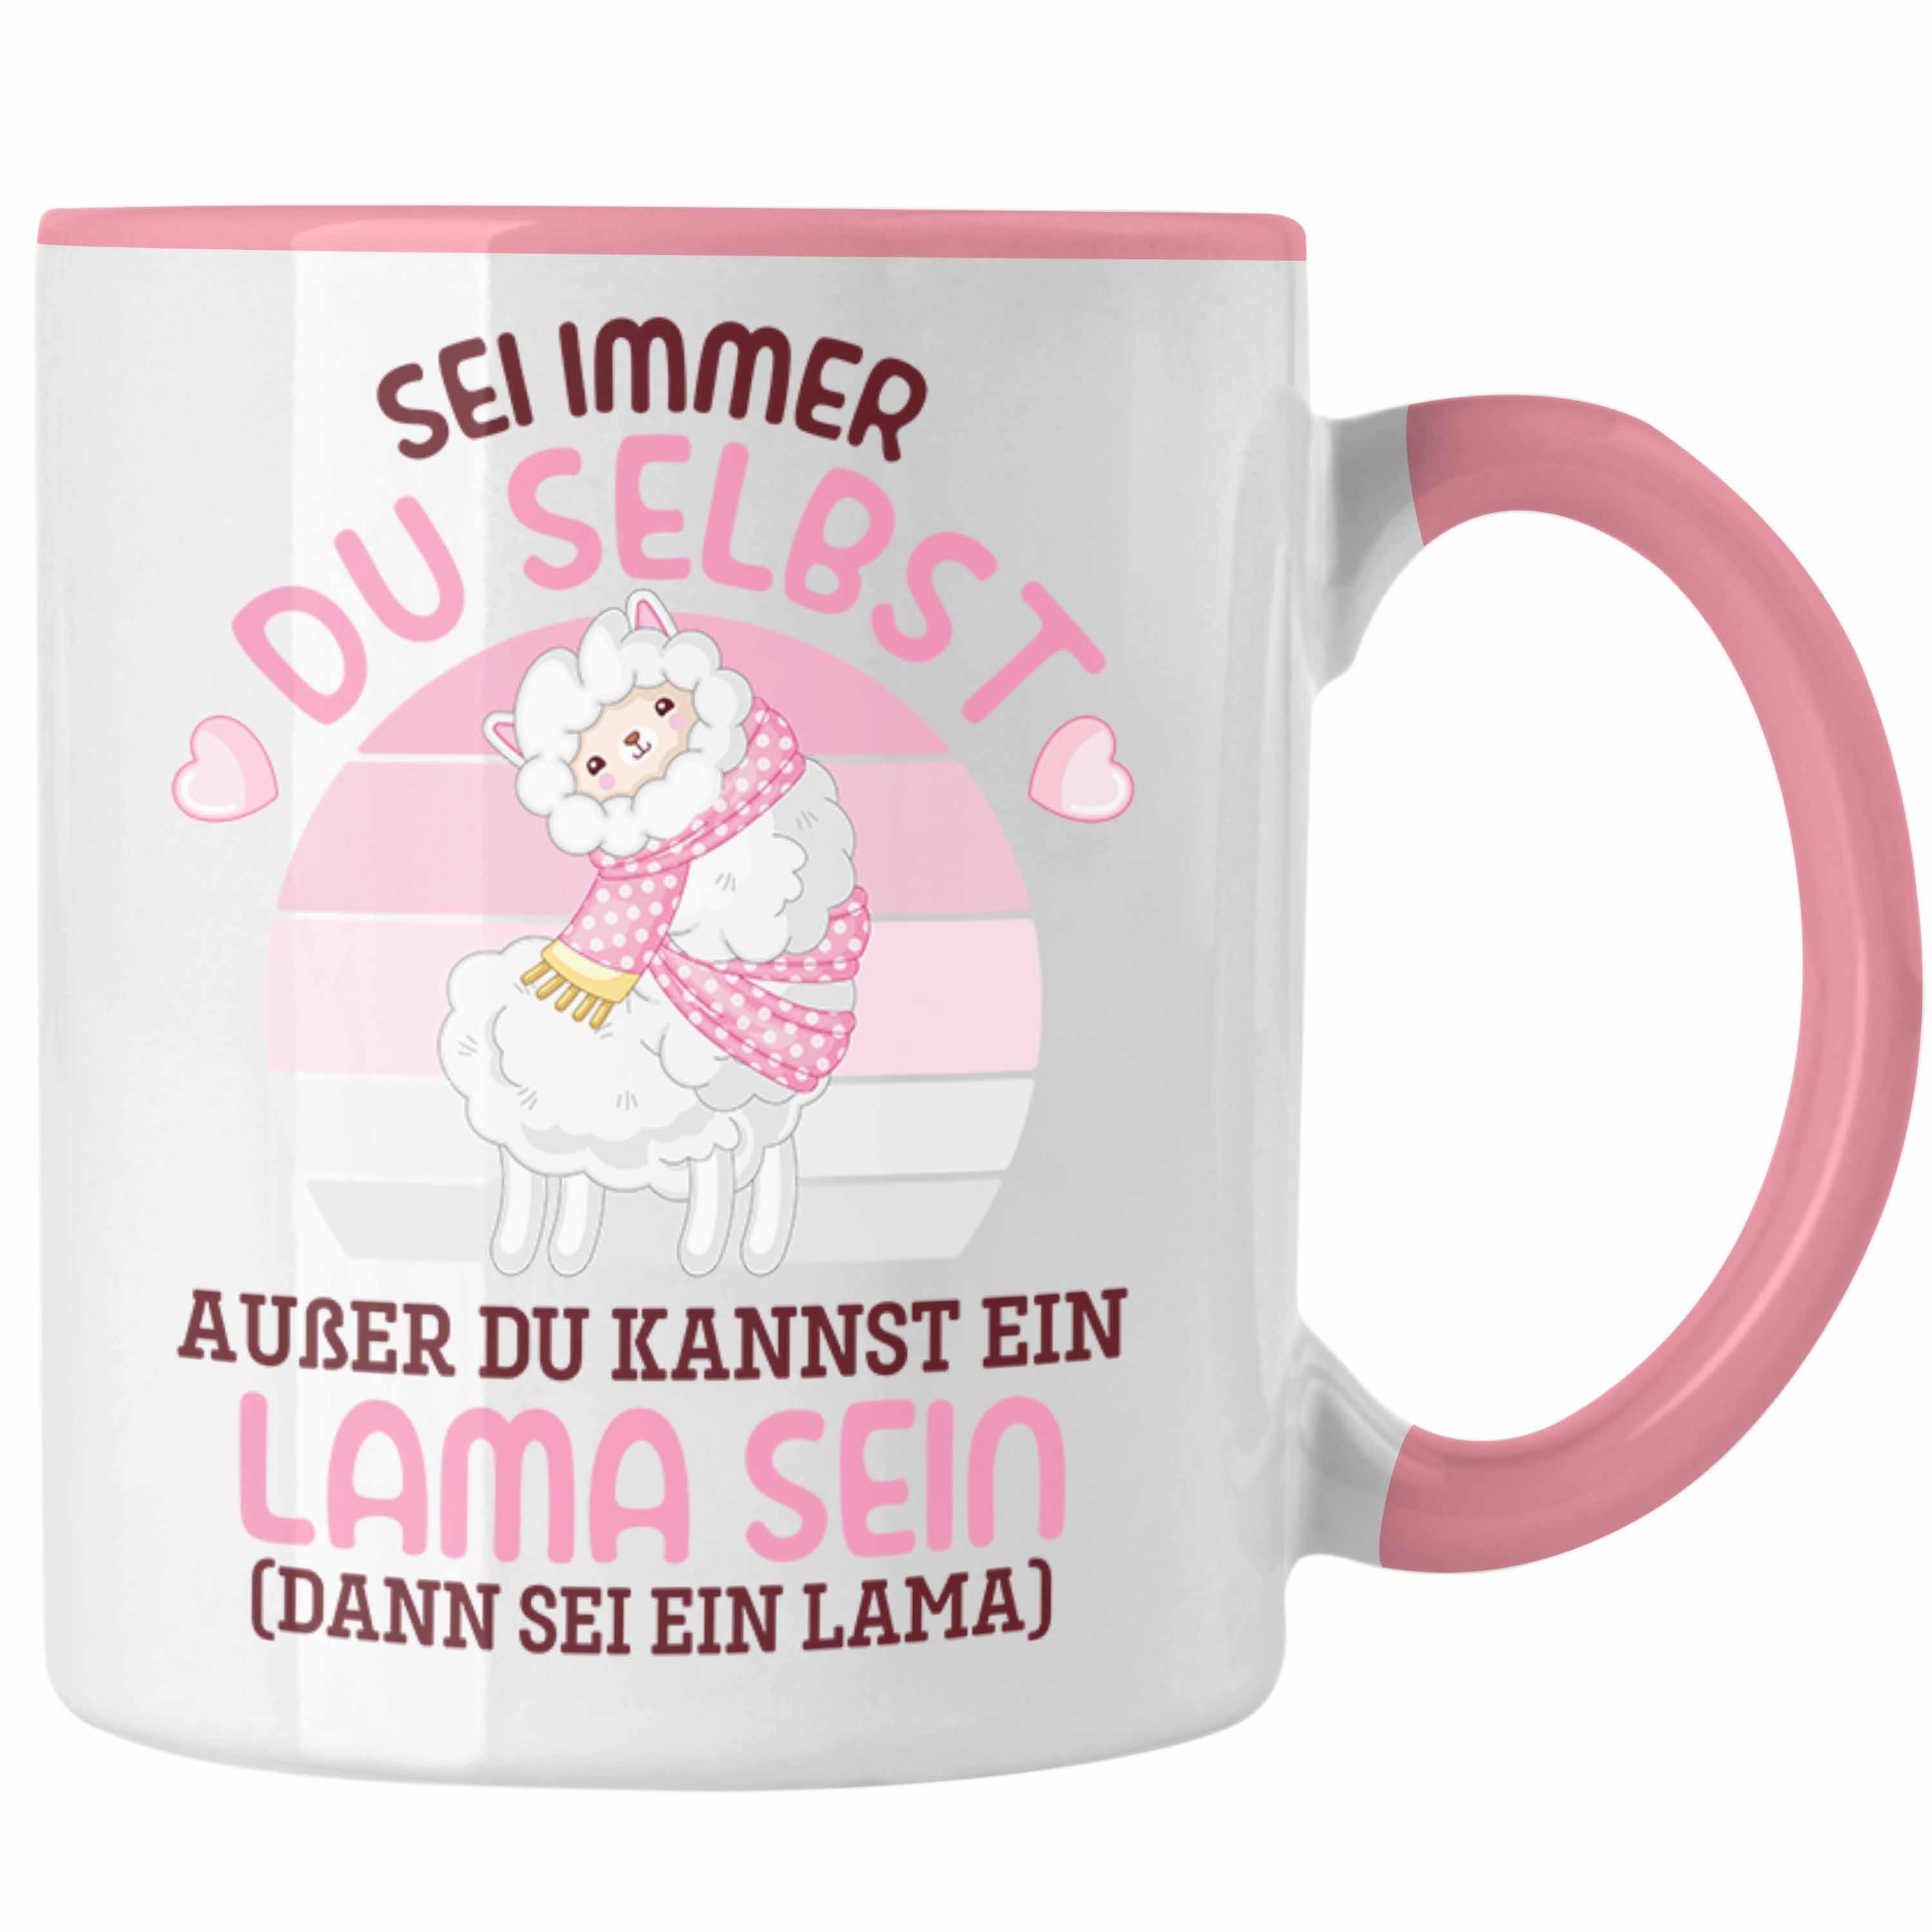 Trendation Tasse Trendation - Sei Immer Du Selbst Llama Spruch Tasse für Alpaka Fans Süße Sprüche Humor Rosa